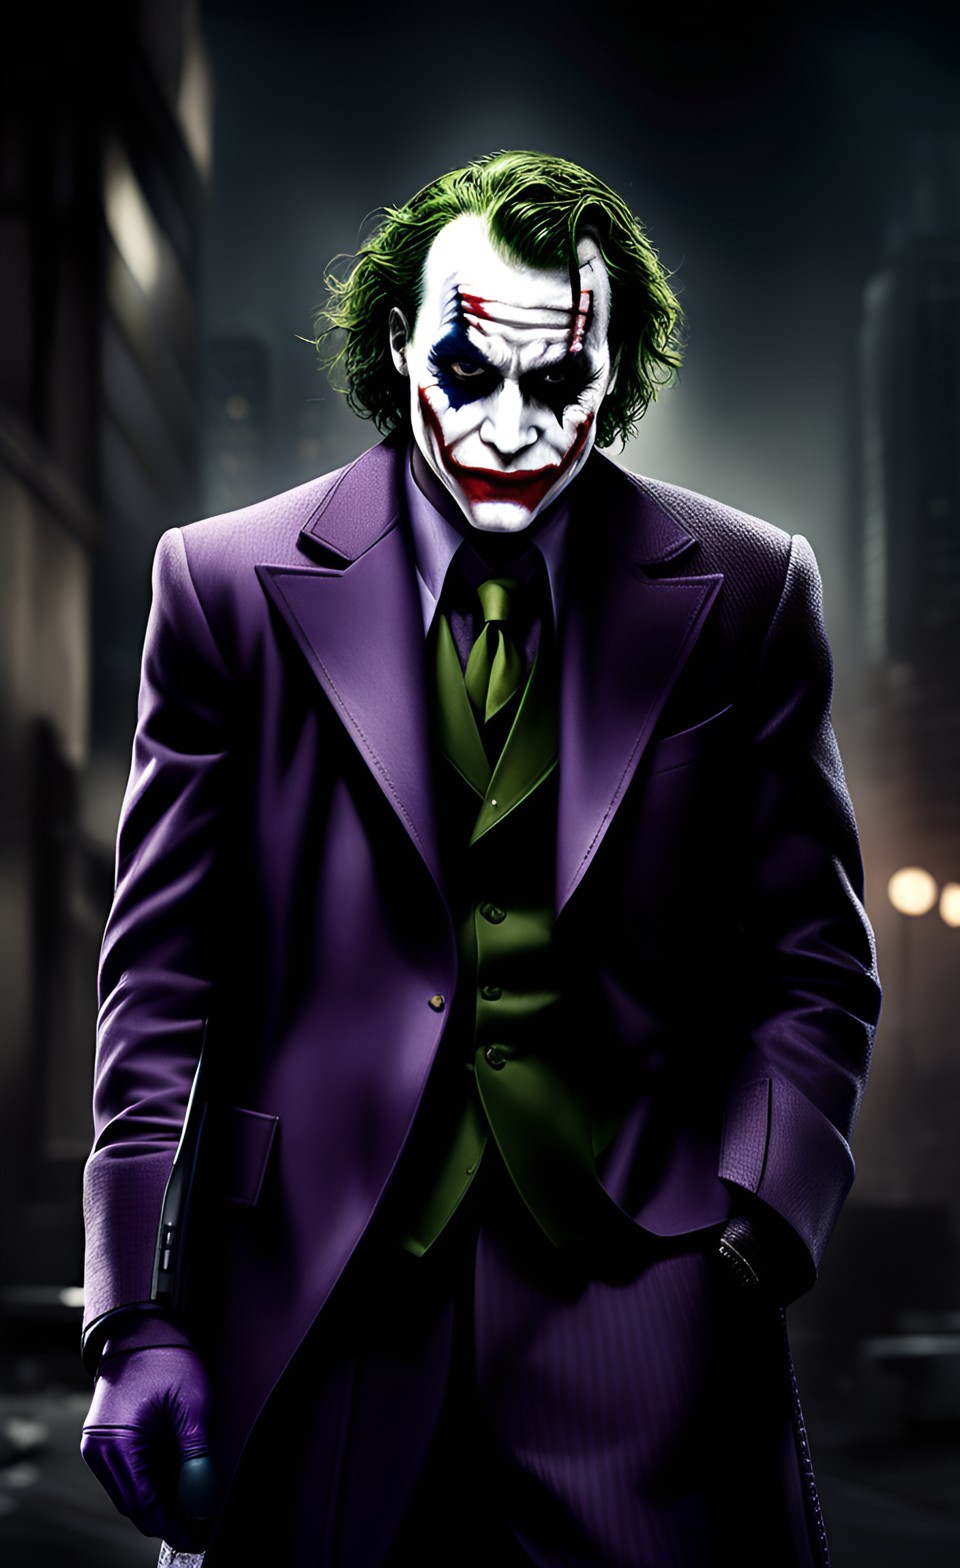 Joker From Dark Knight Rises Wallpaper 4K